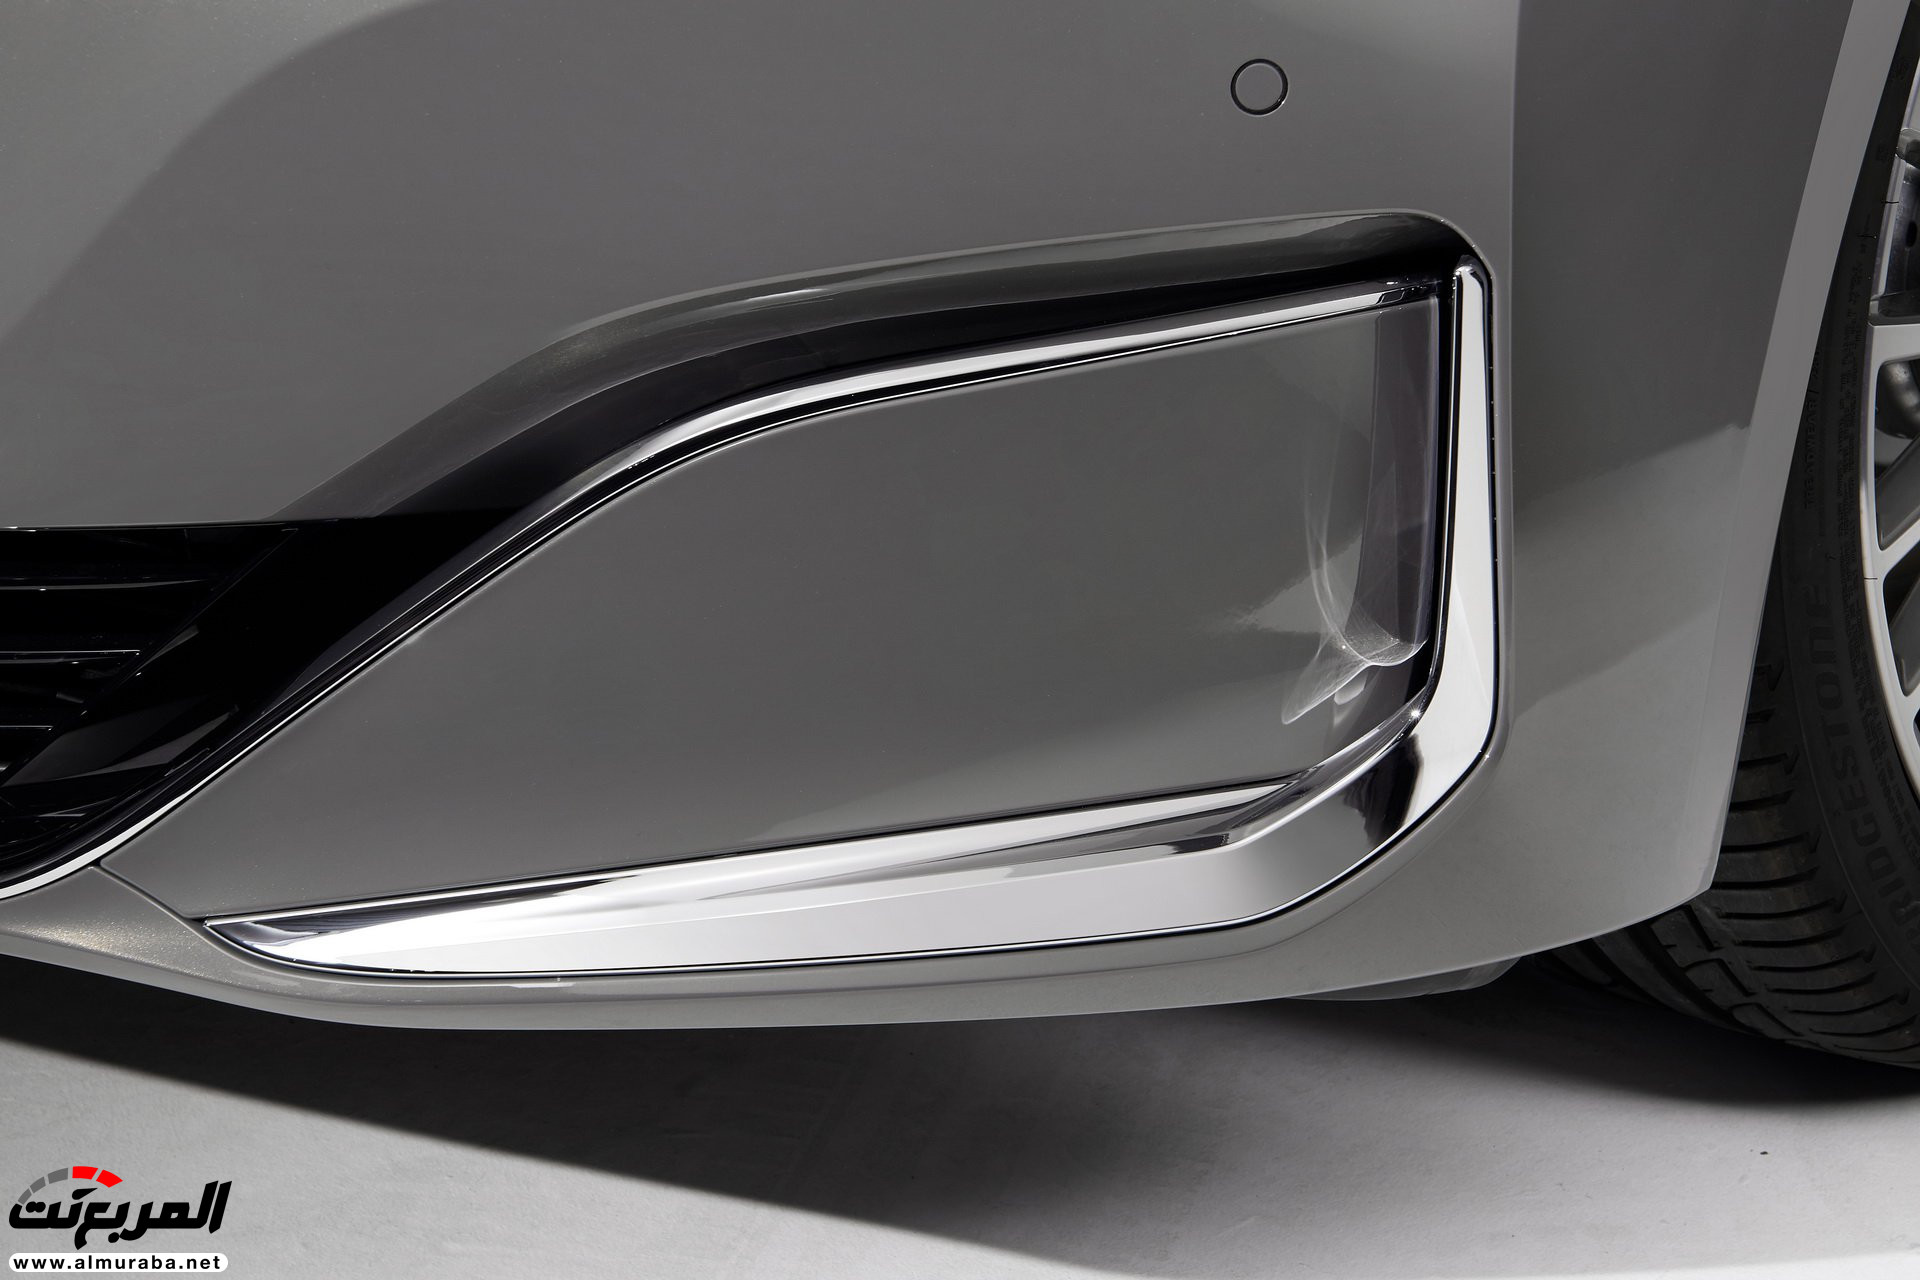 بي ام دبليو الفئة السابعة 2020 المحدثة تكشف نفسها رسمياً "صور ومواصفات" BMW 7 Series 92